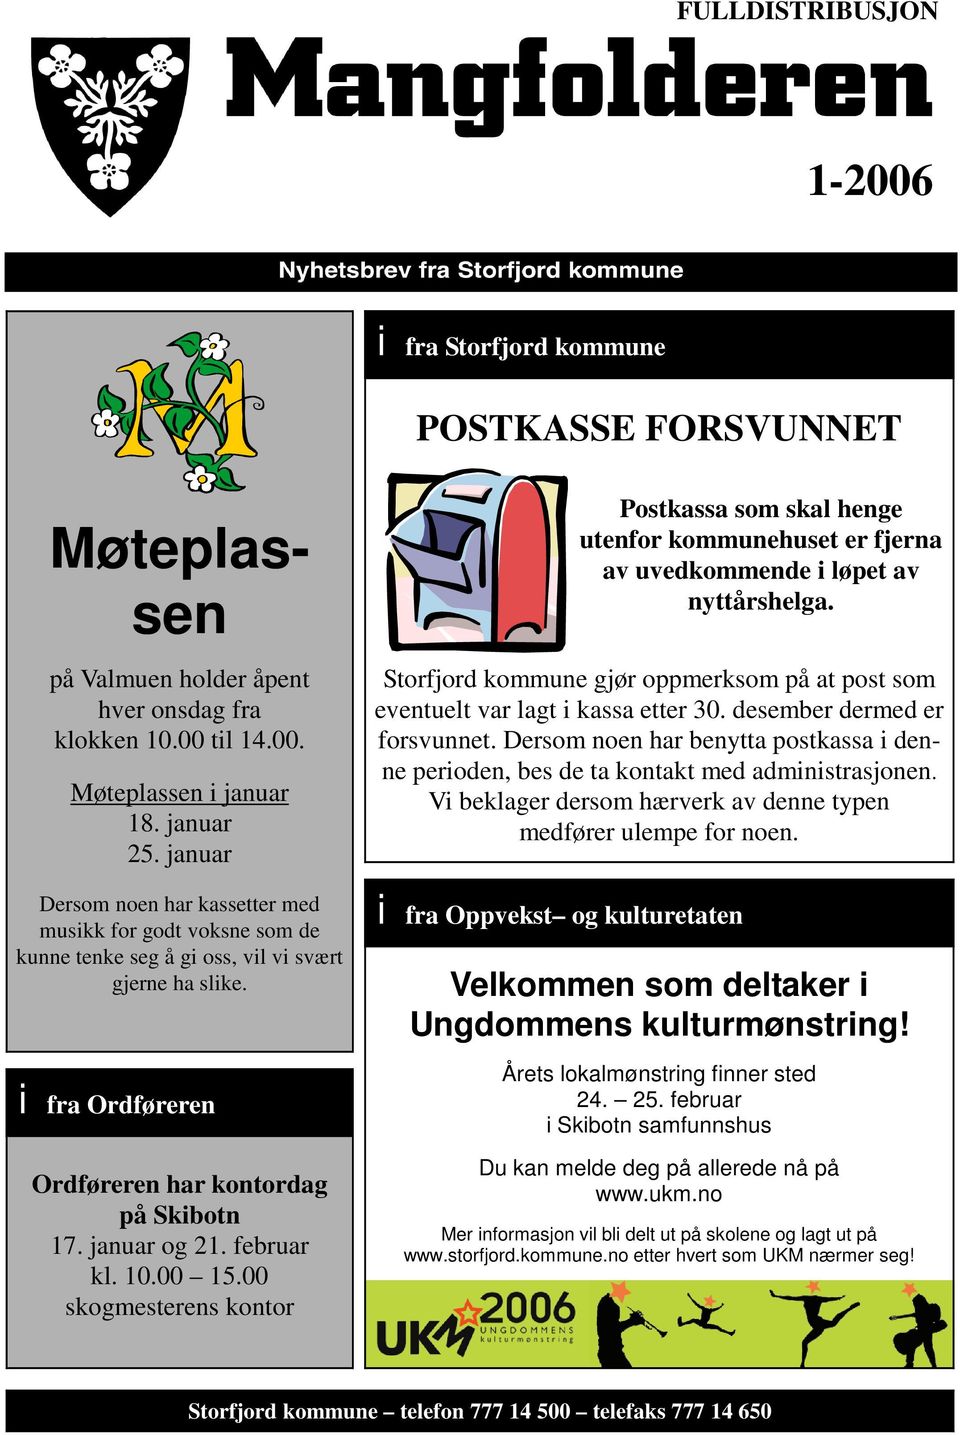 februar kl. 10.00 15.00 skogmesterens kontor Postkassa som skal henge utenfor kommunehuset er fjerna av uvedkommende i løpet av nyttårshelga.